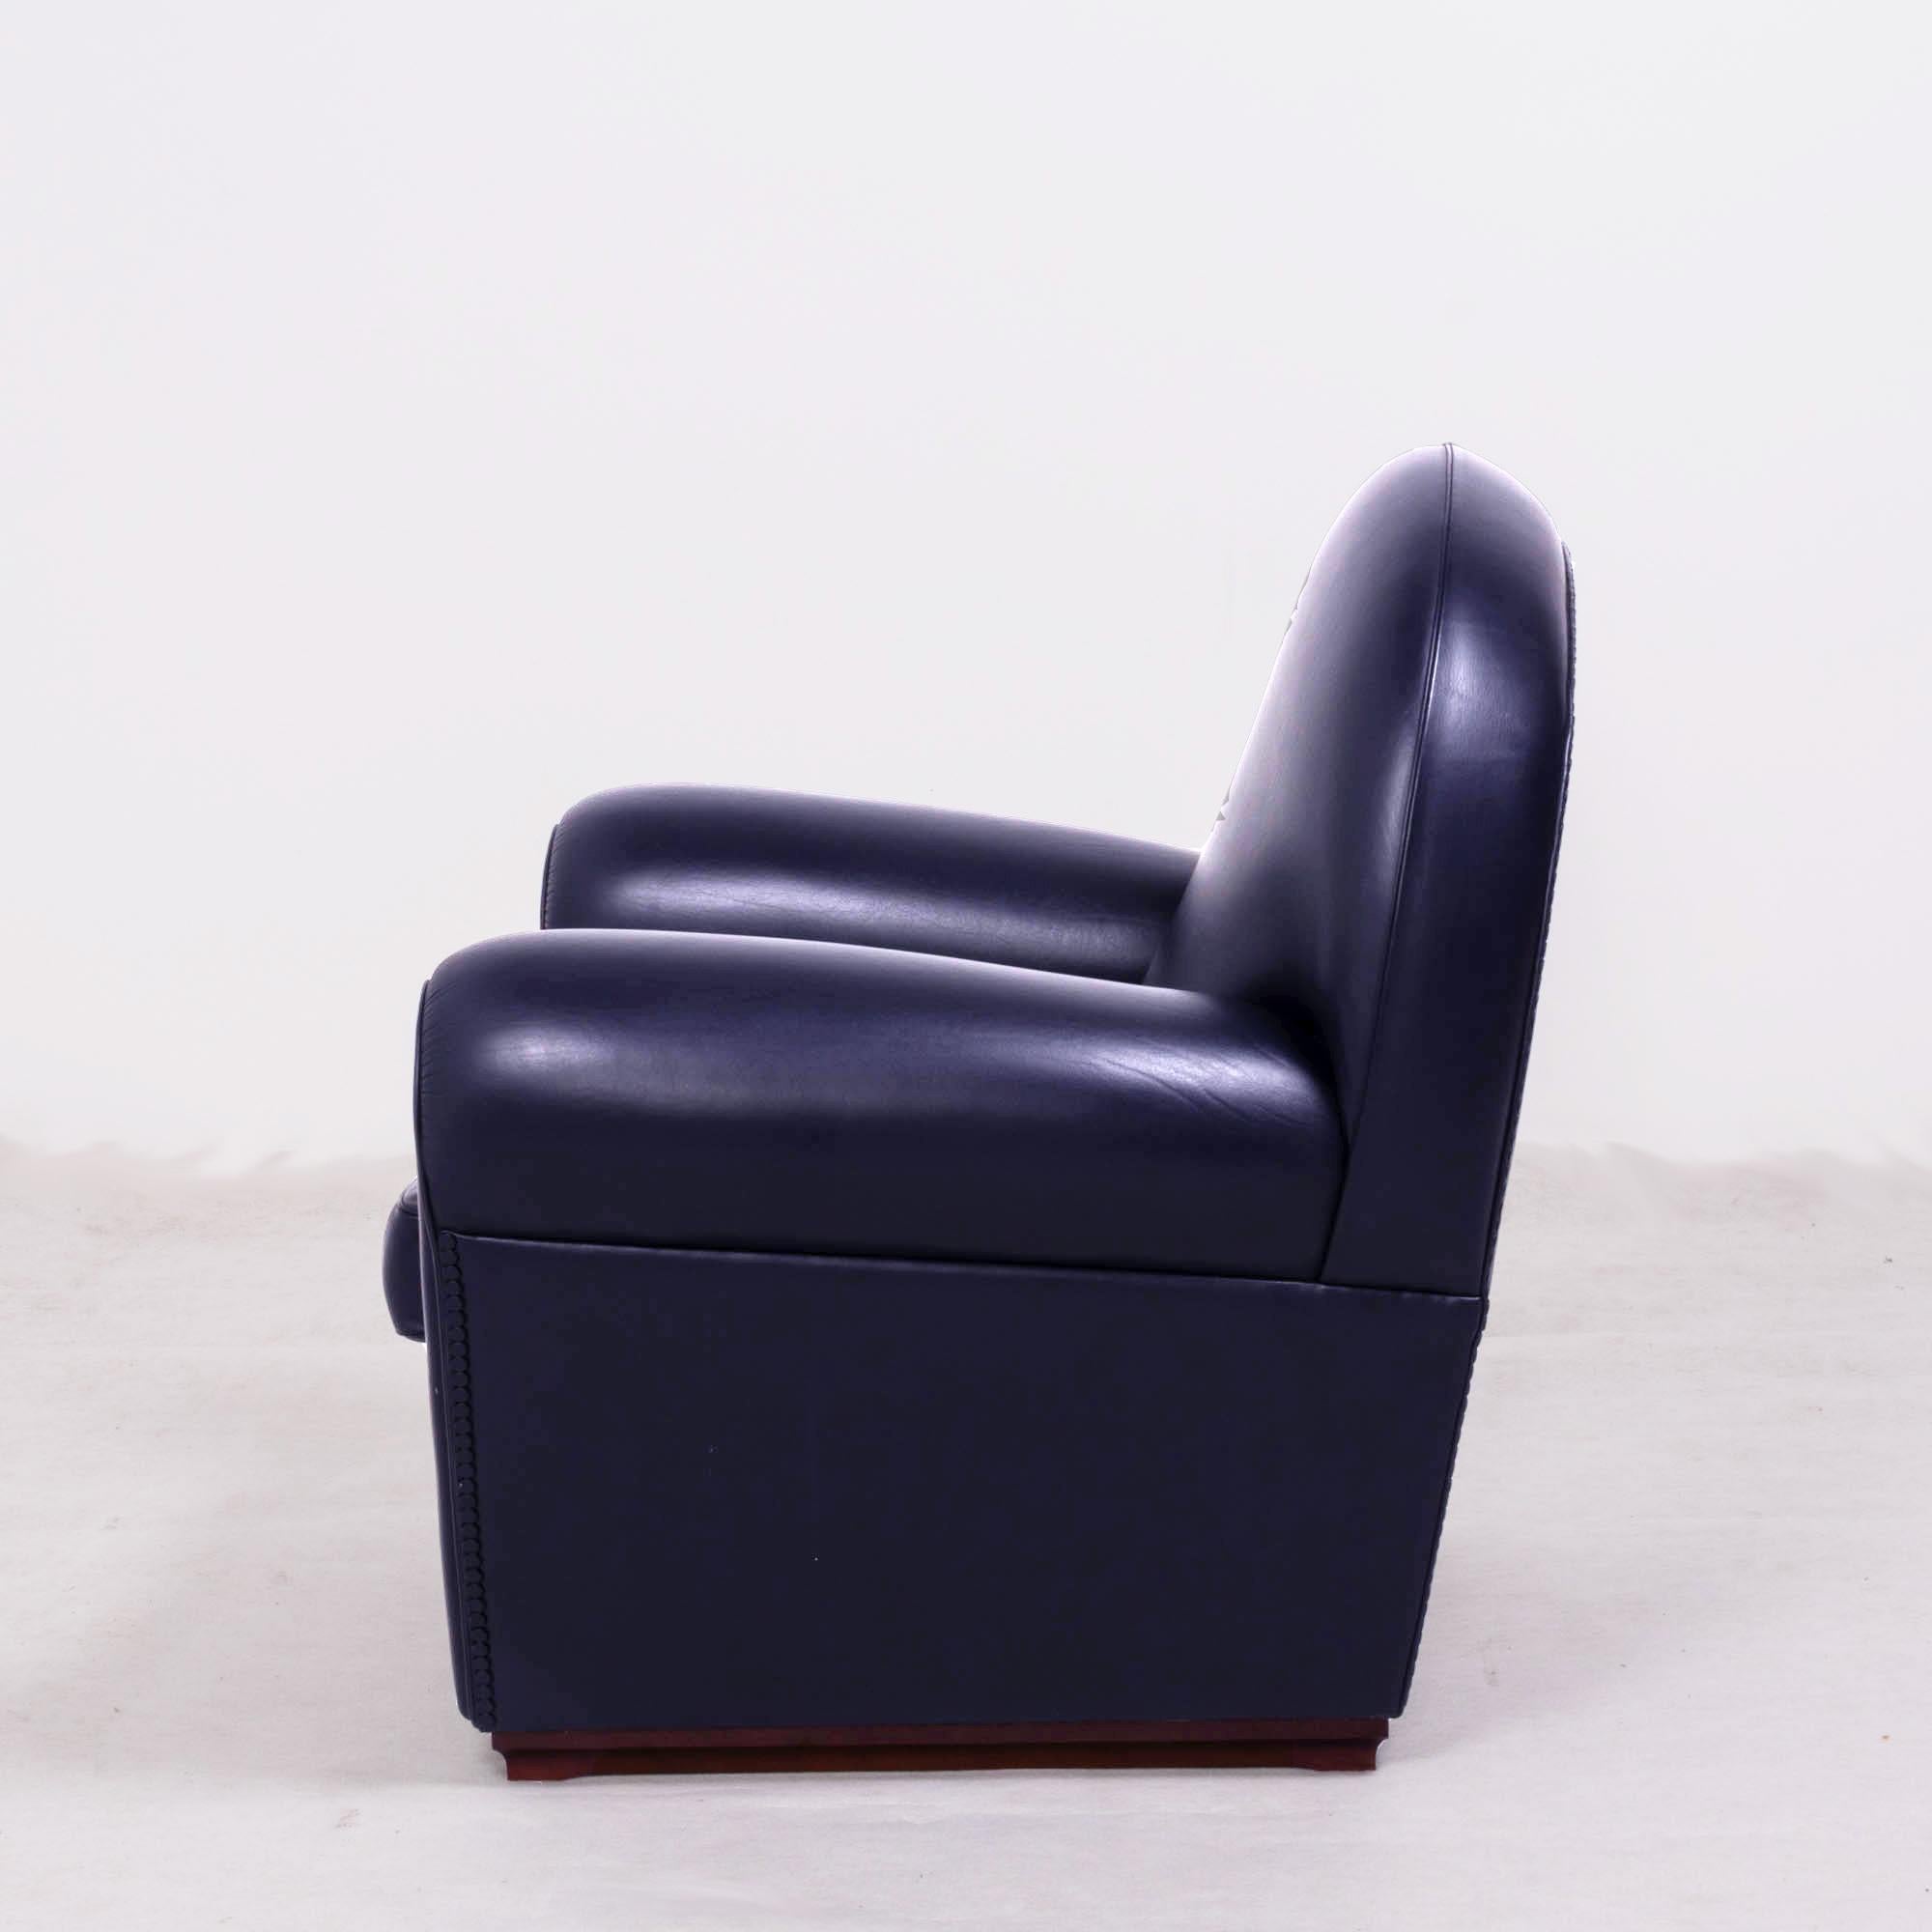 Poltrona Frau, Art Deco style Vanity Fair Black Leather Sofa and armchairs set 3